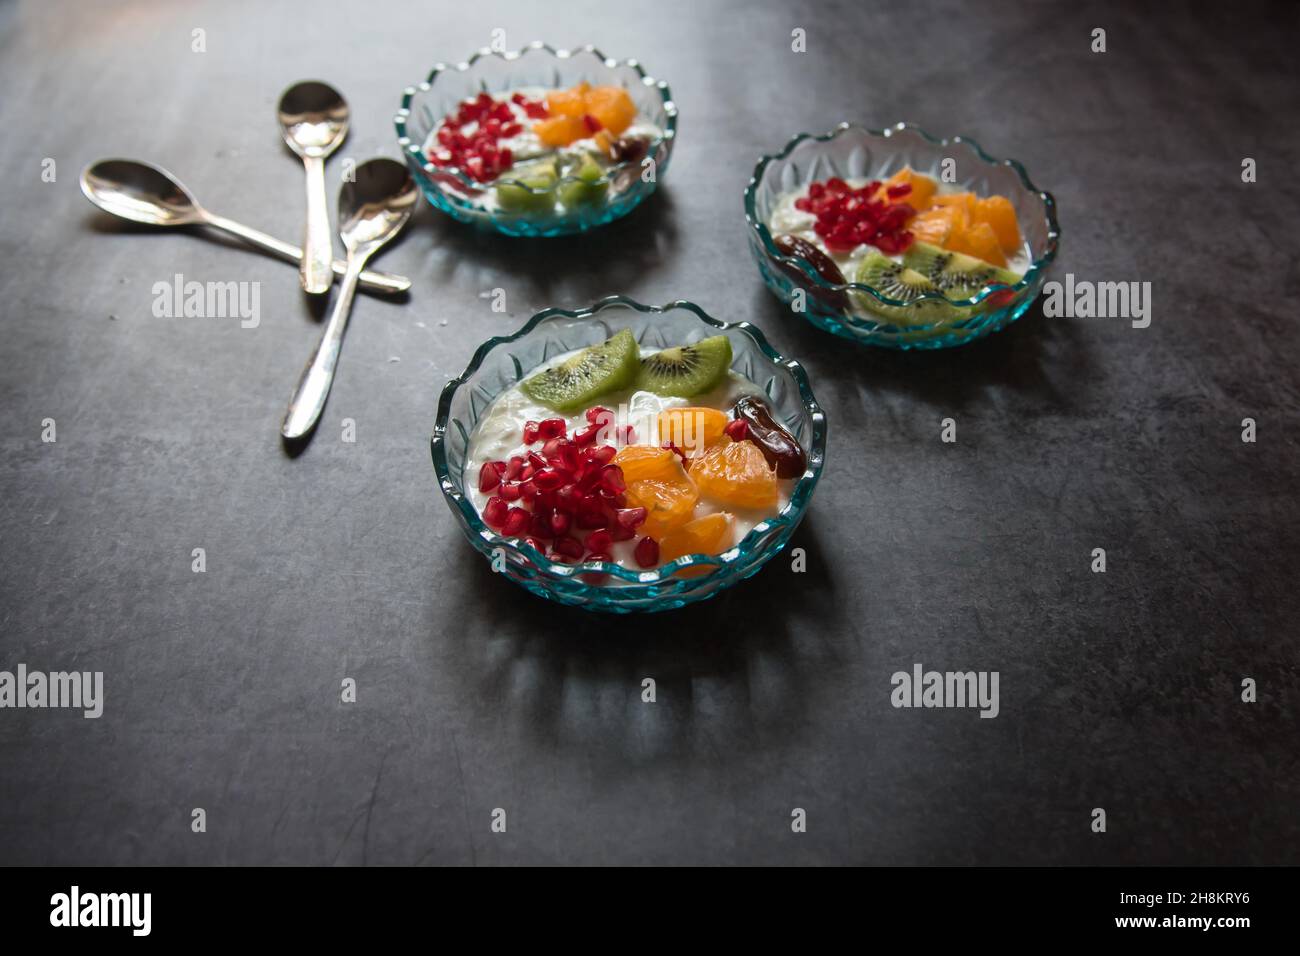 Dessert populaire, salade de fruits dans un bol.Vue de dessus. Banque D'Images